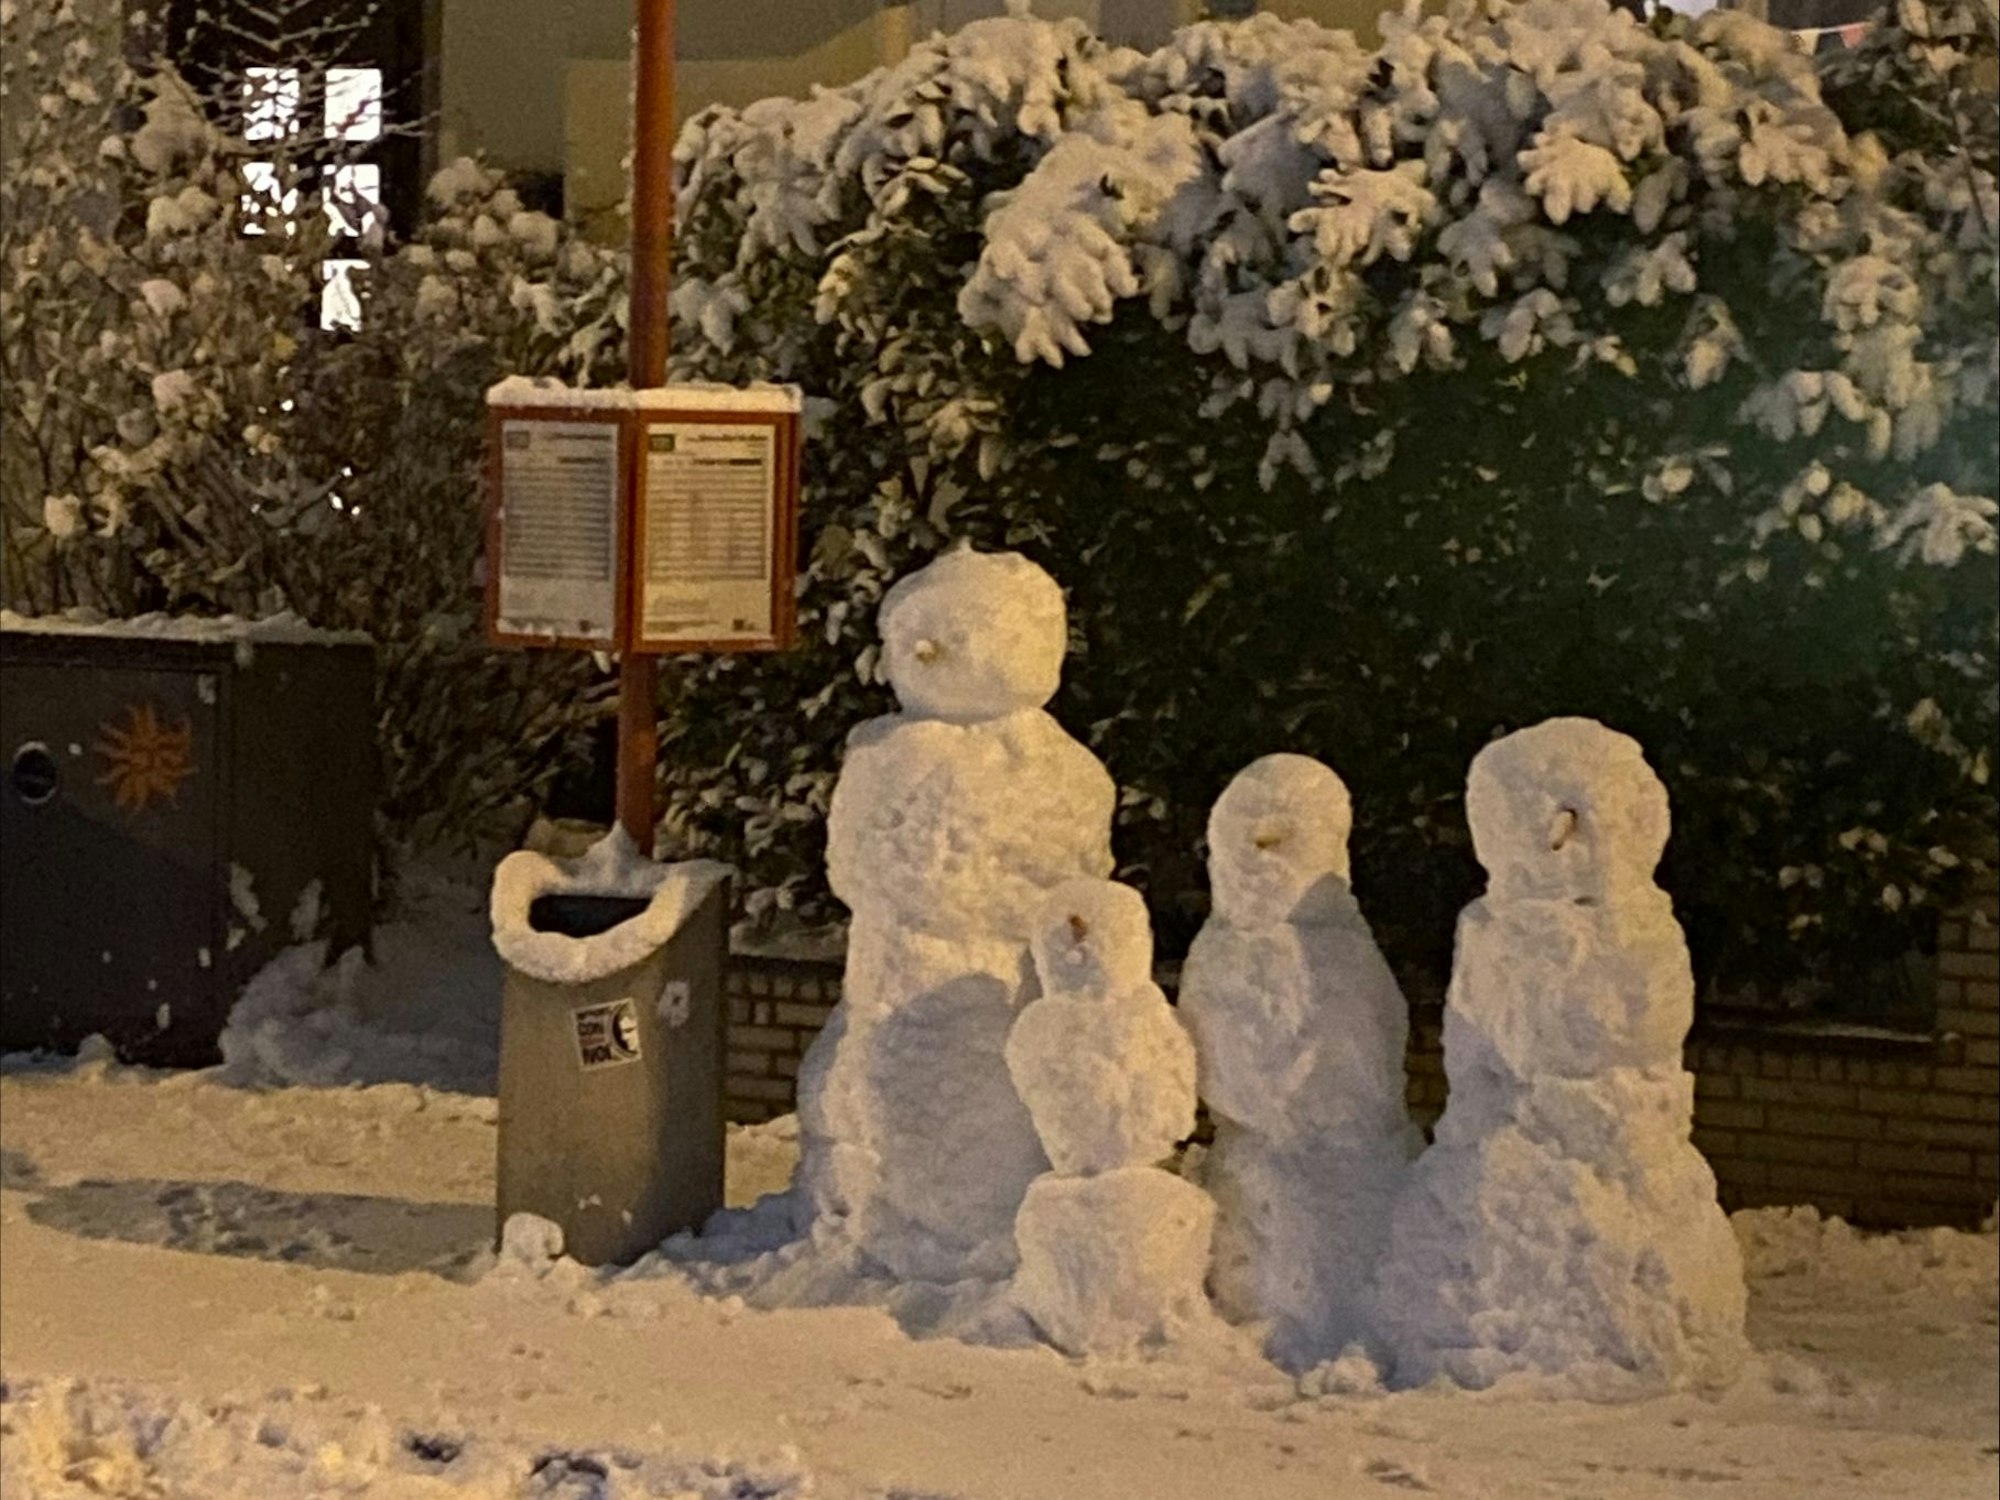 Schneemänner an einer Bushaltestelle.